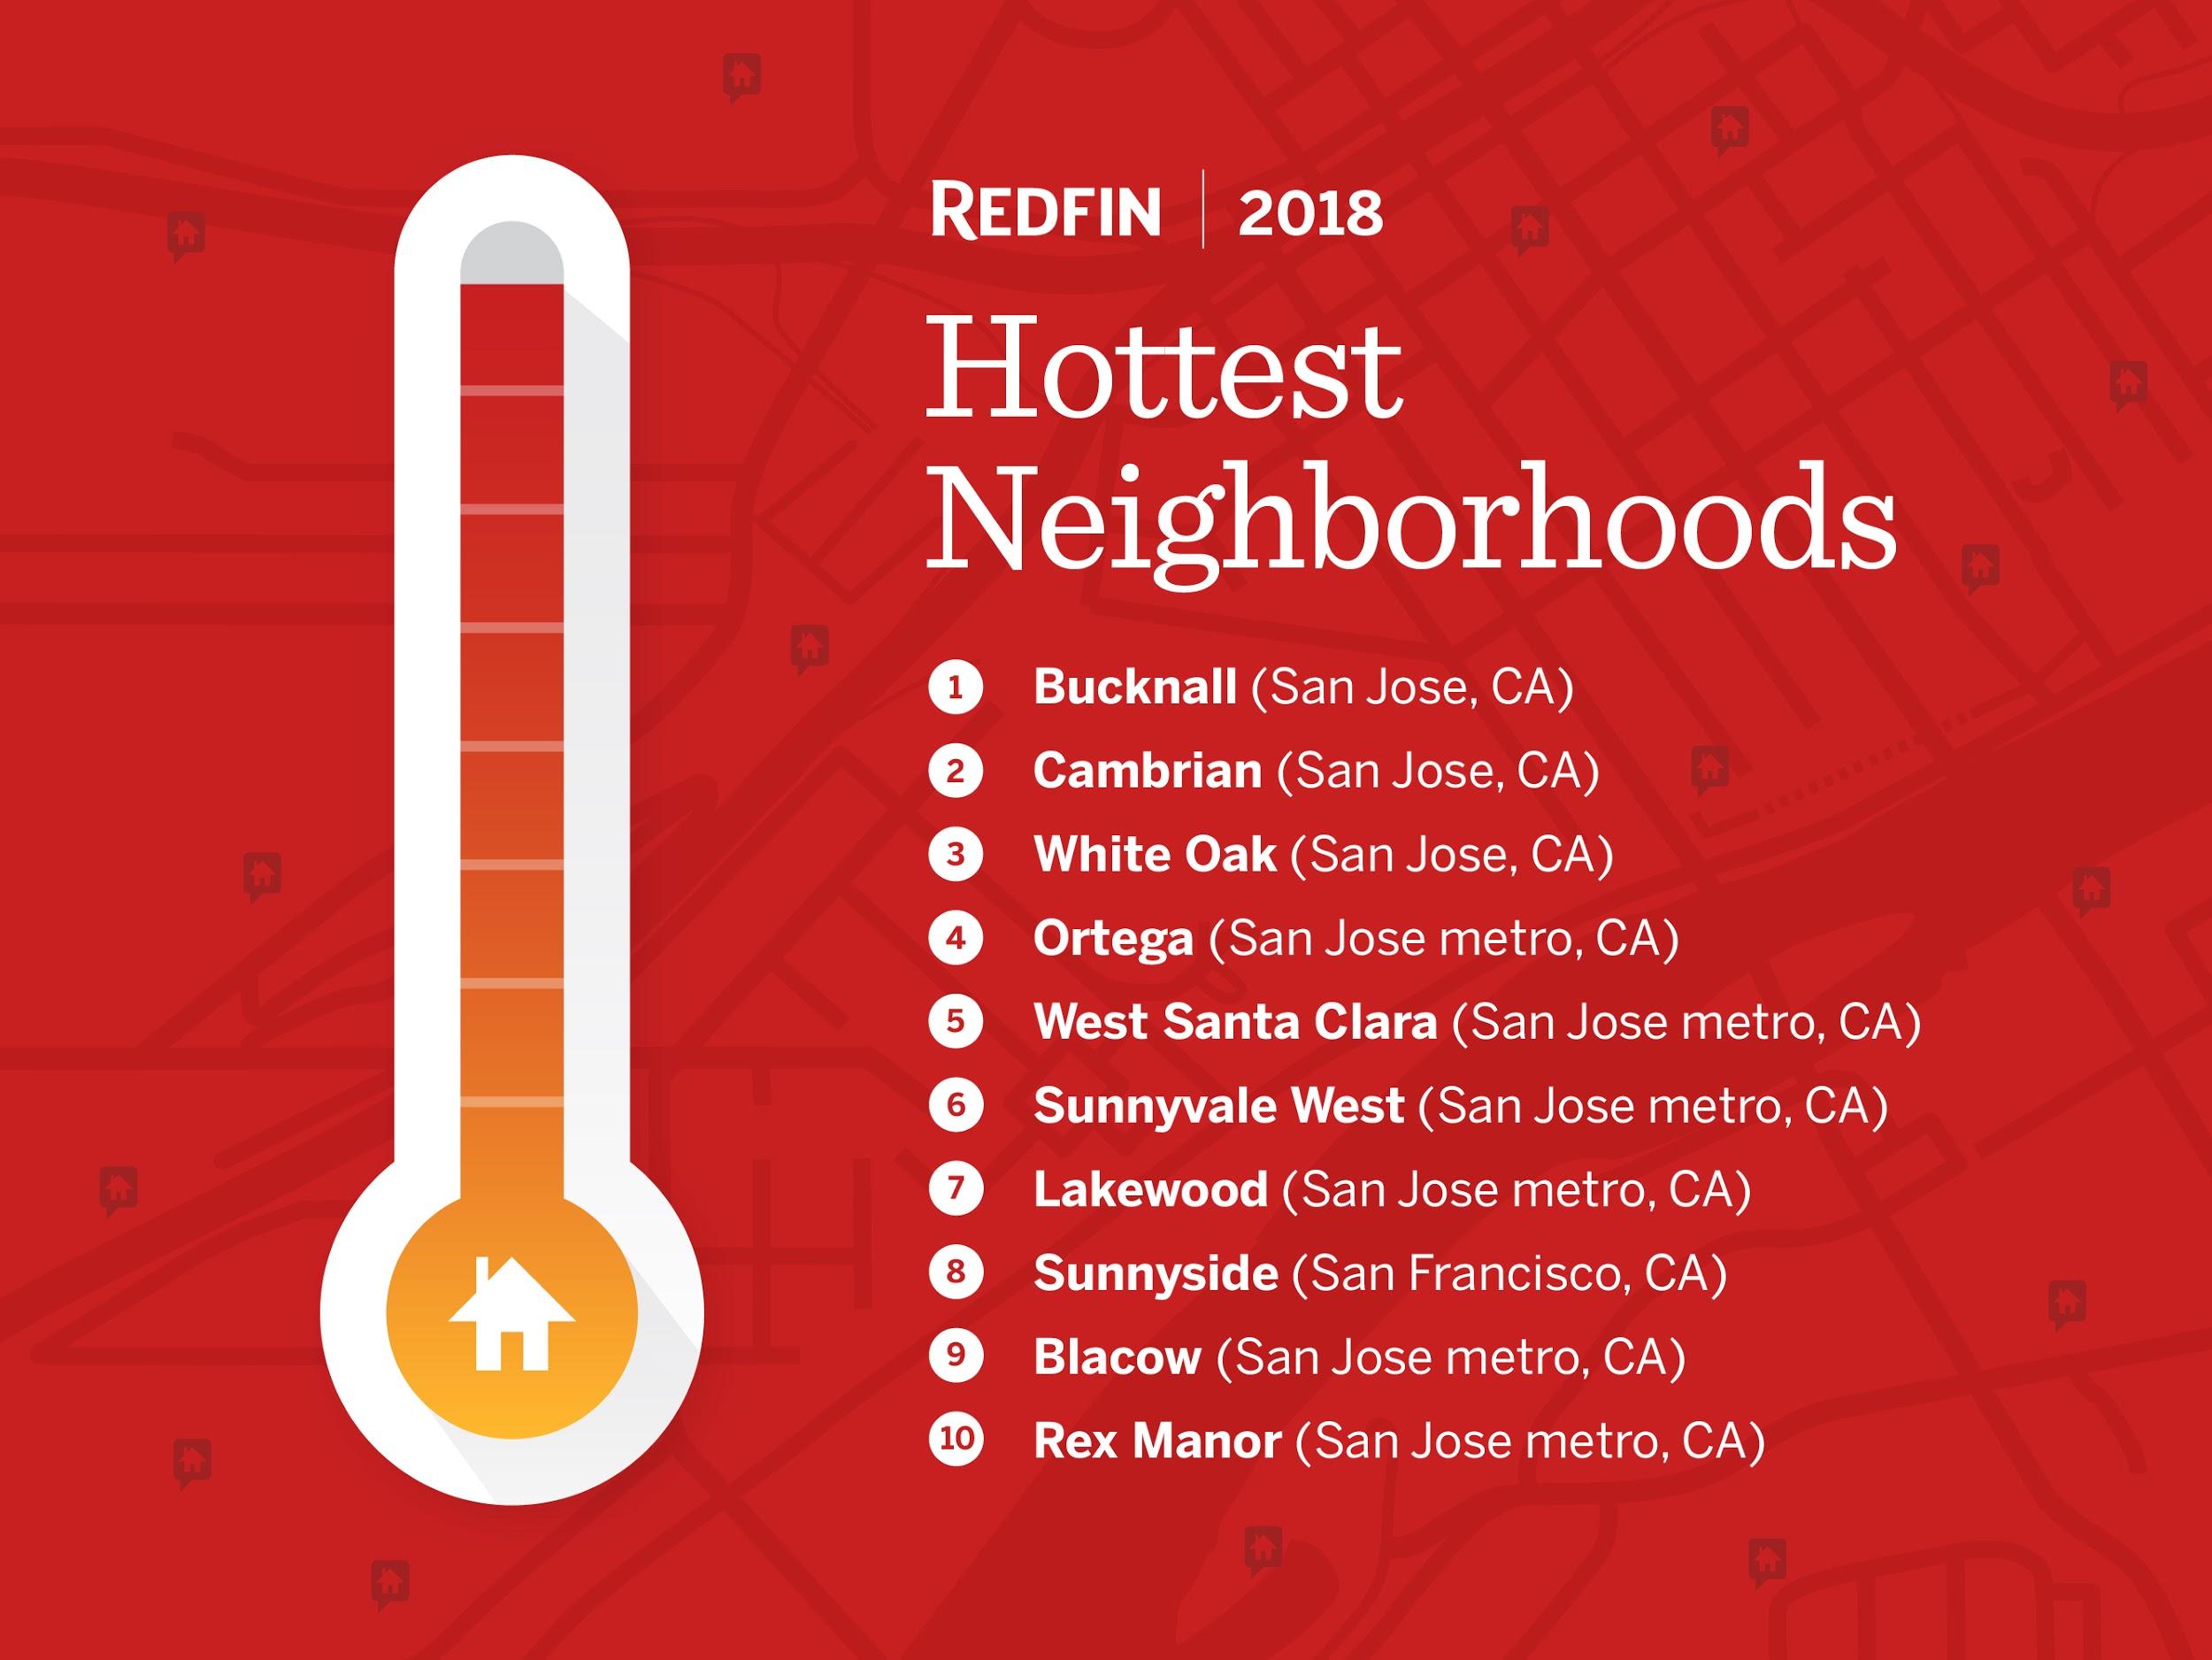 redfin Hottest Neighborhoods 2018 1